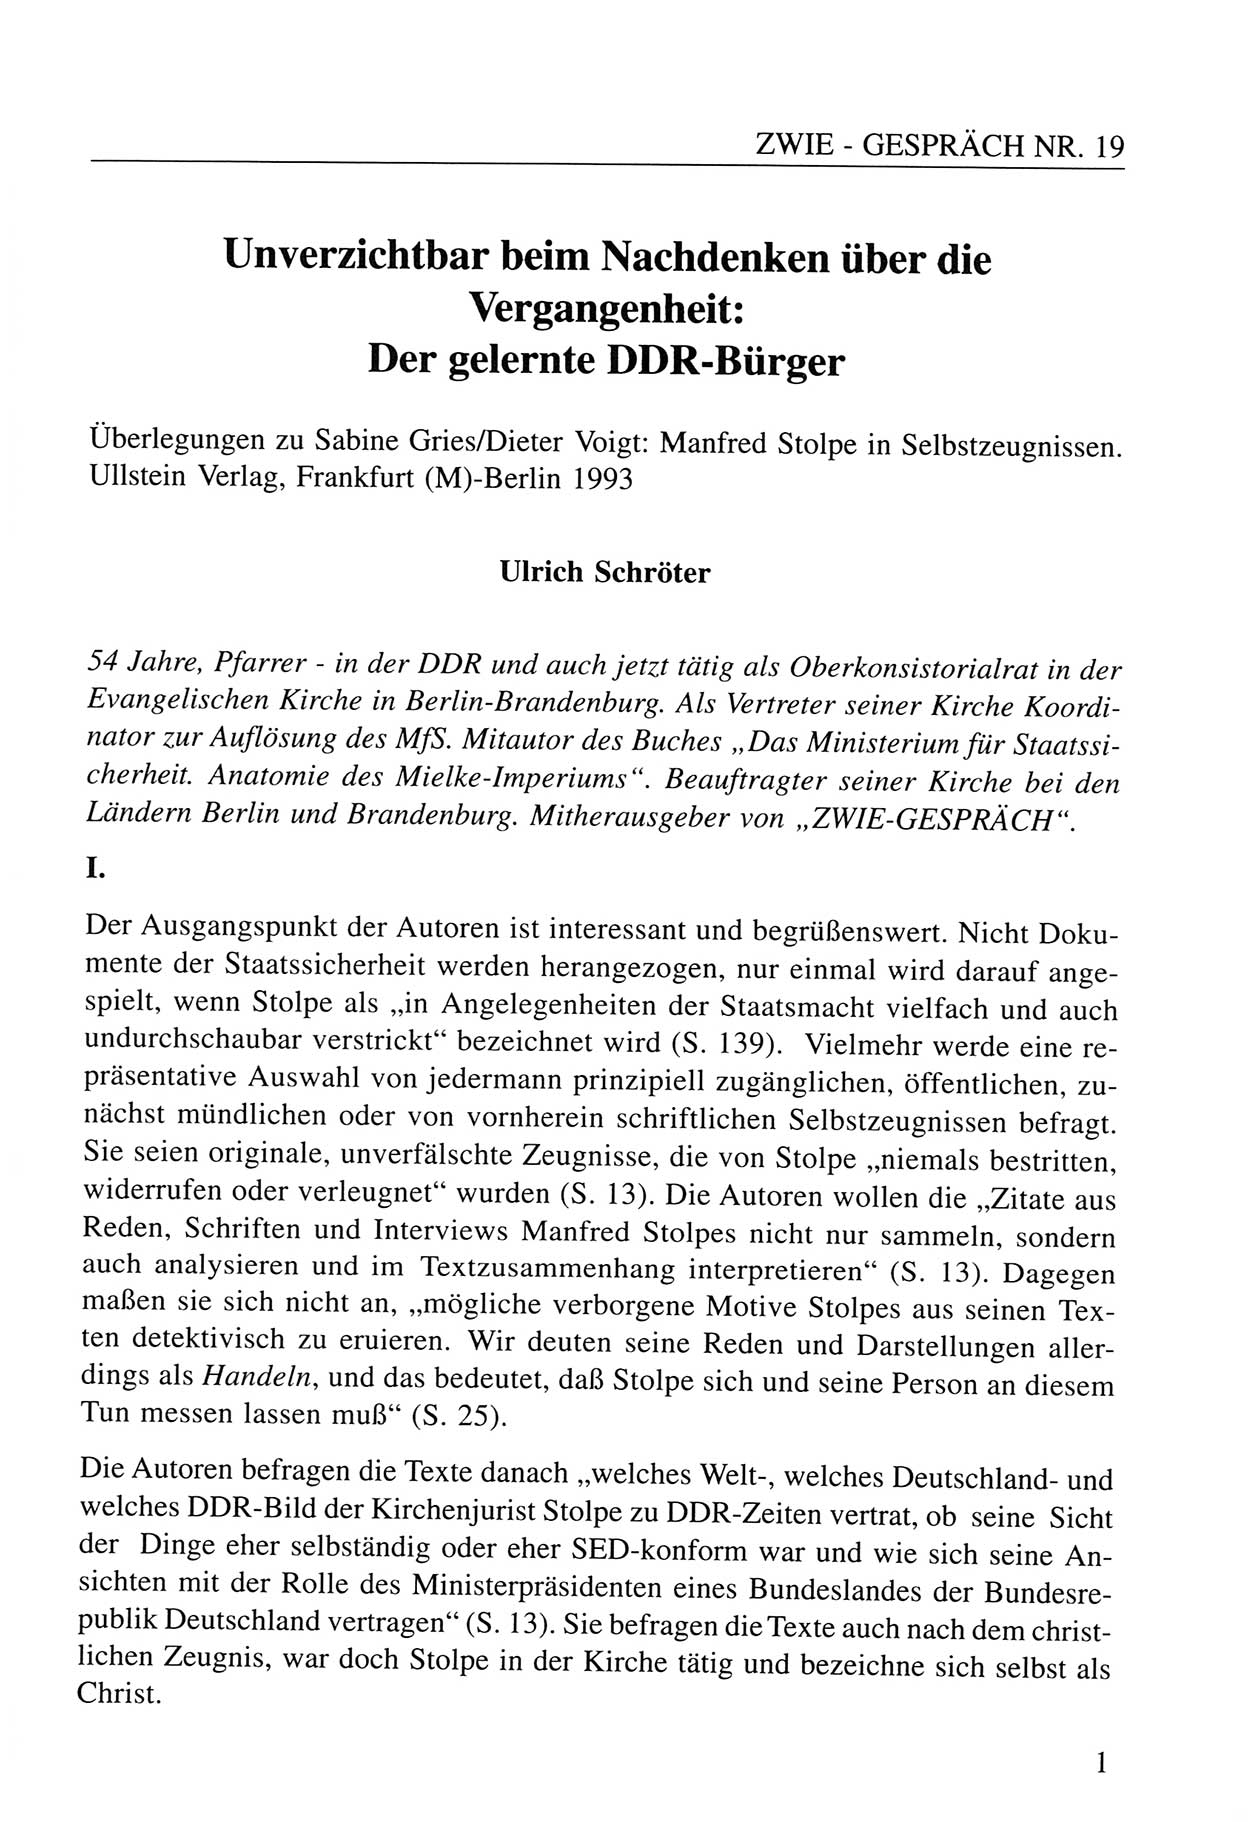 Zwie-Gespräch, Beiträge zum Umgang mit der Staatssicherheits-Vergangenheit [Deutsche Demokratische Republik (DDR)], Ausgabe Nr. 19, Berlin 1994, Seite 1 (Zwie-Gespr. Ausg. 19 1994, S. 1)